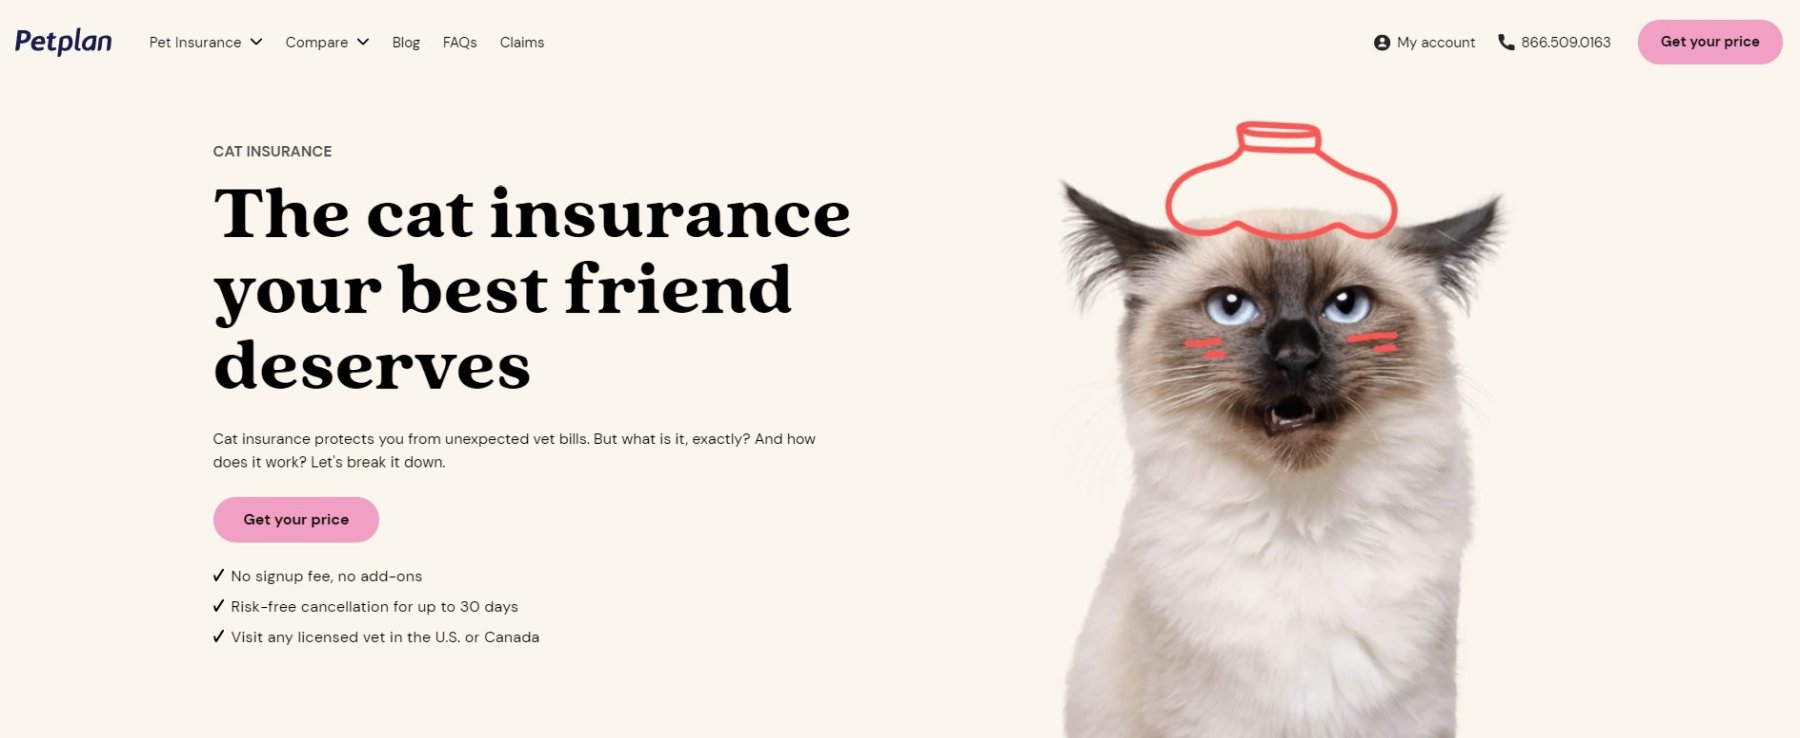 Petplan Cat Insurance